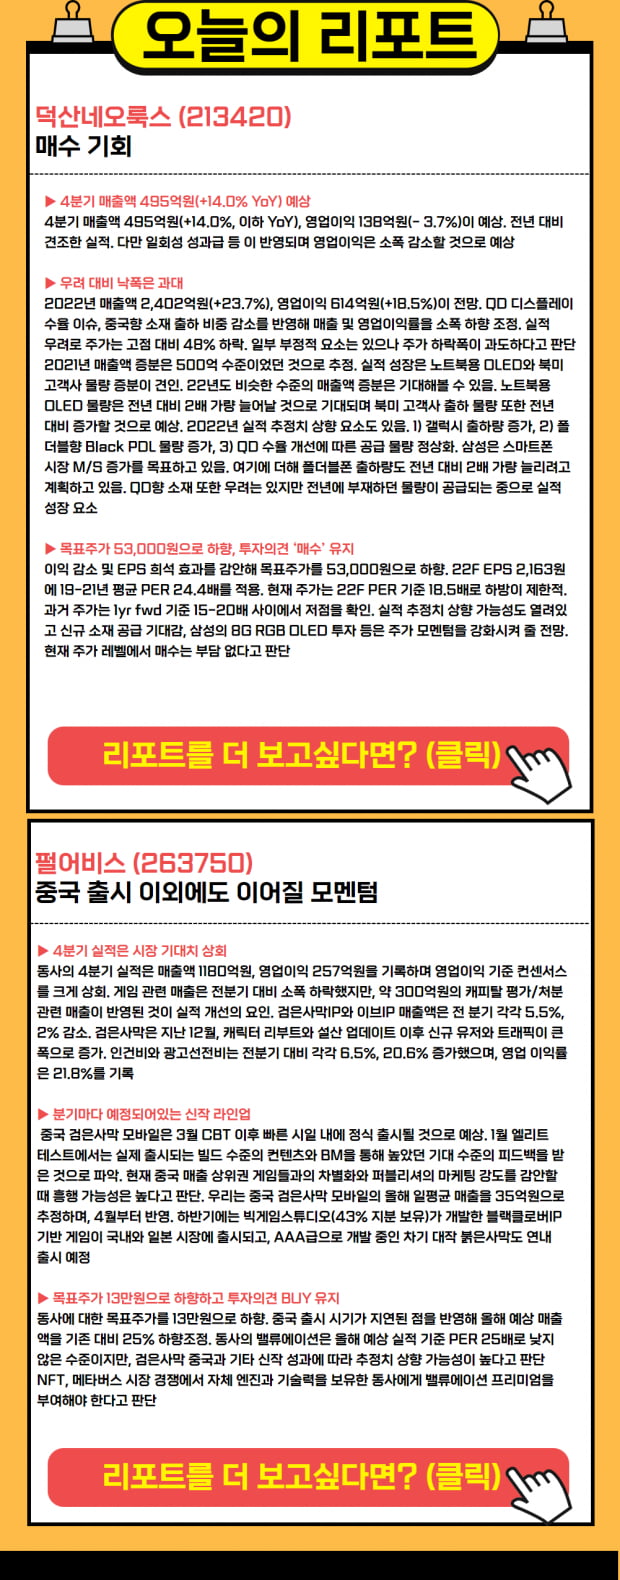 신작 신규 출시 임박! 지금이 기회인 종목 TOP2!